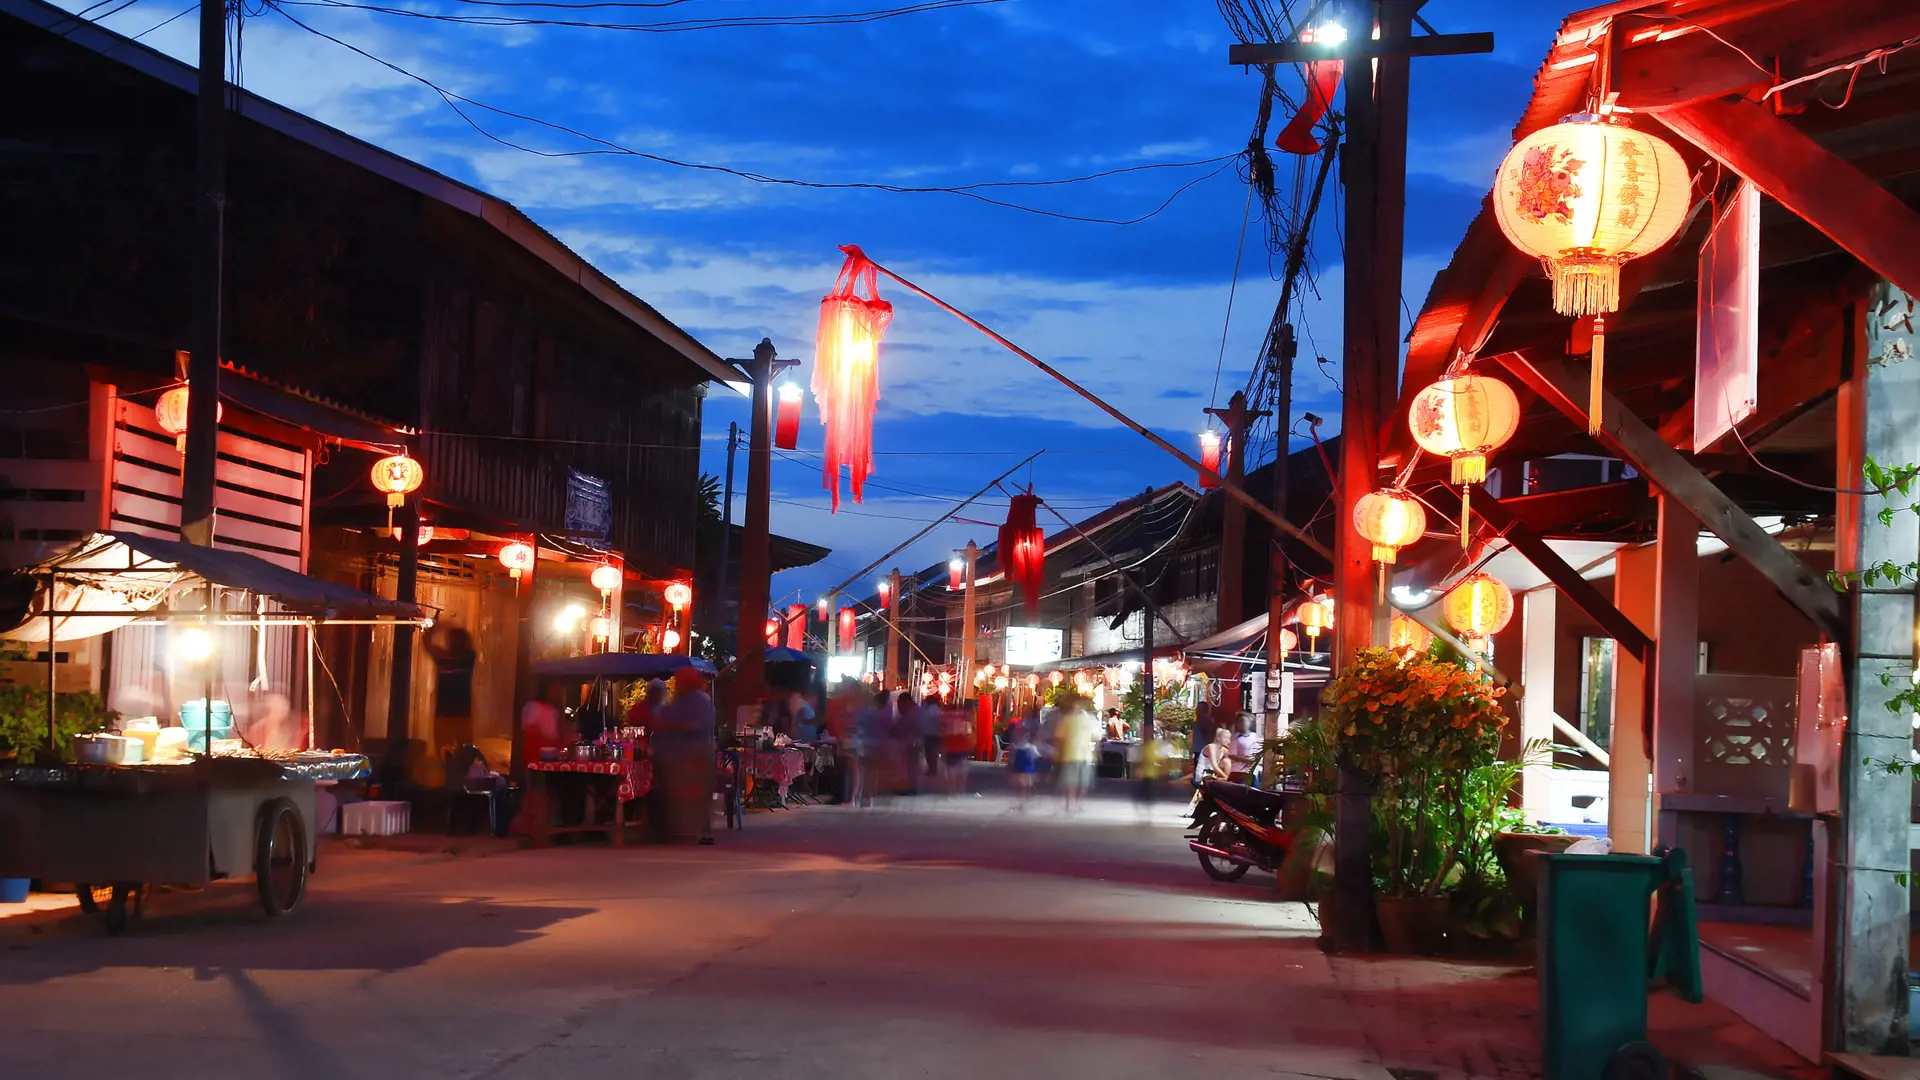 Koh Lanta_Old Town during Walking street festival_44012050.jpg